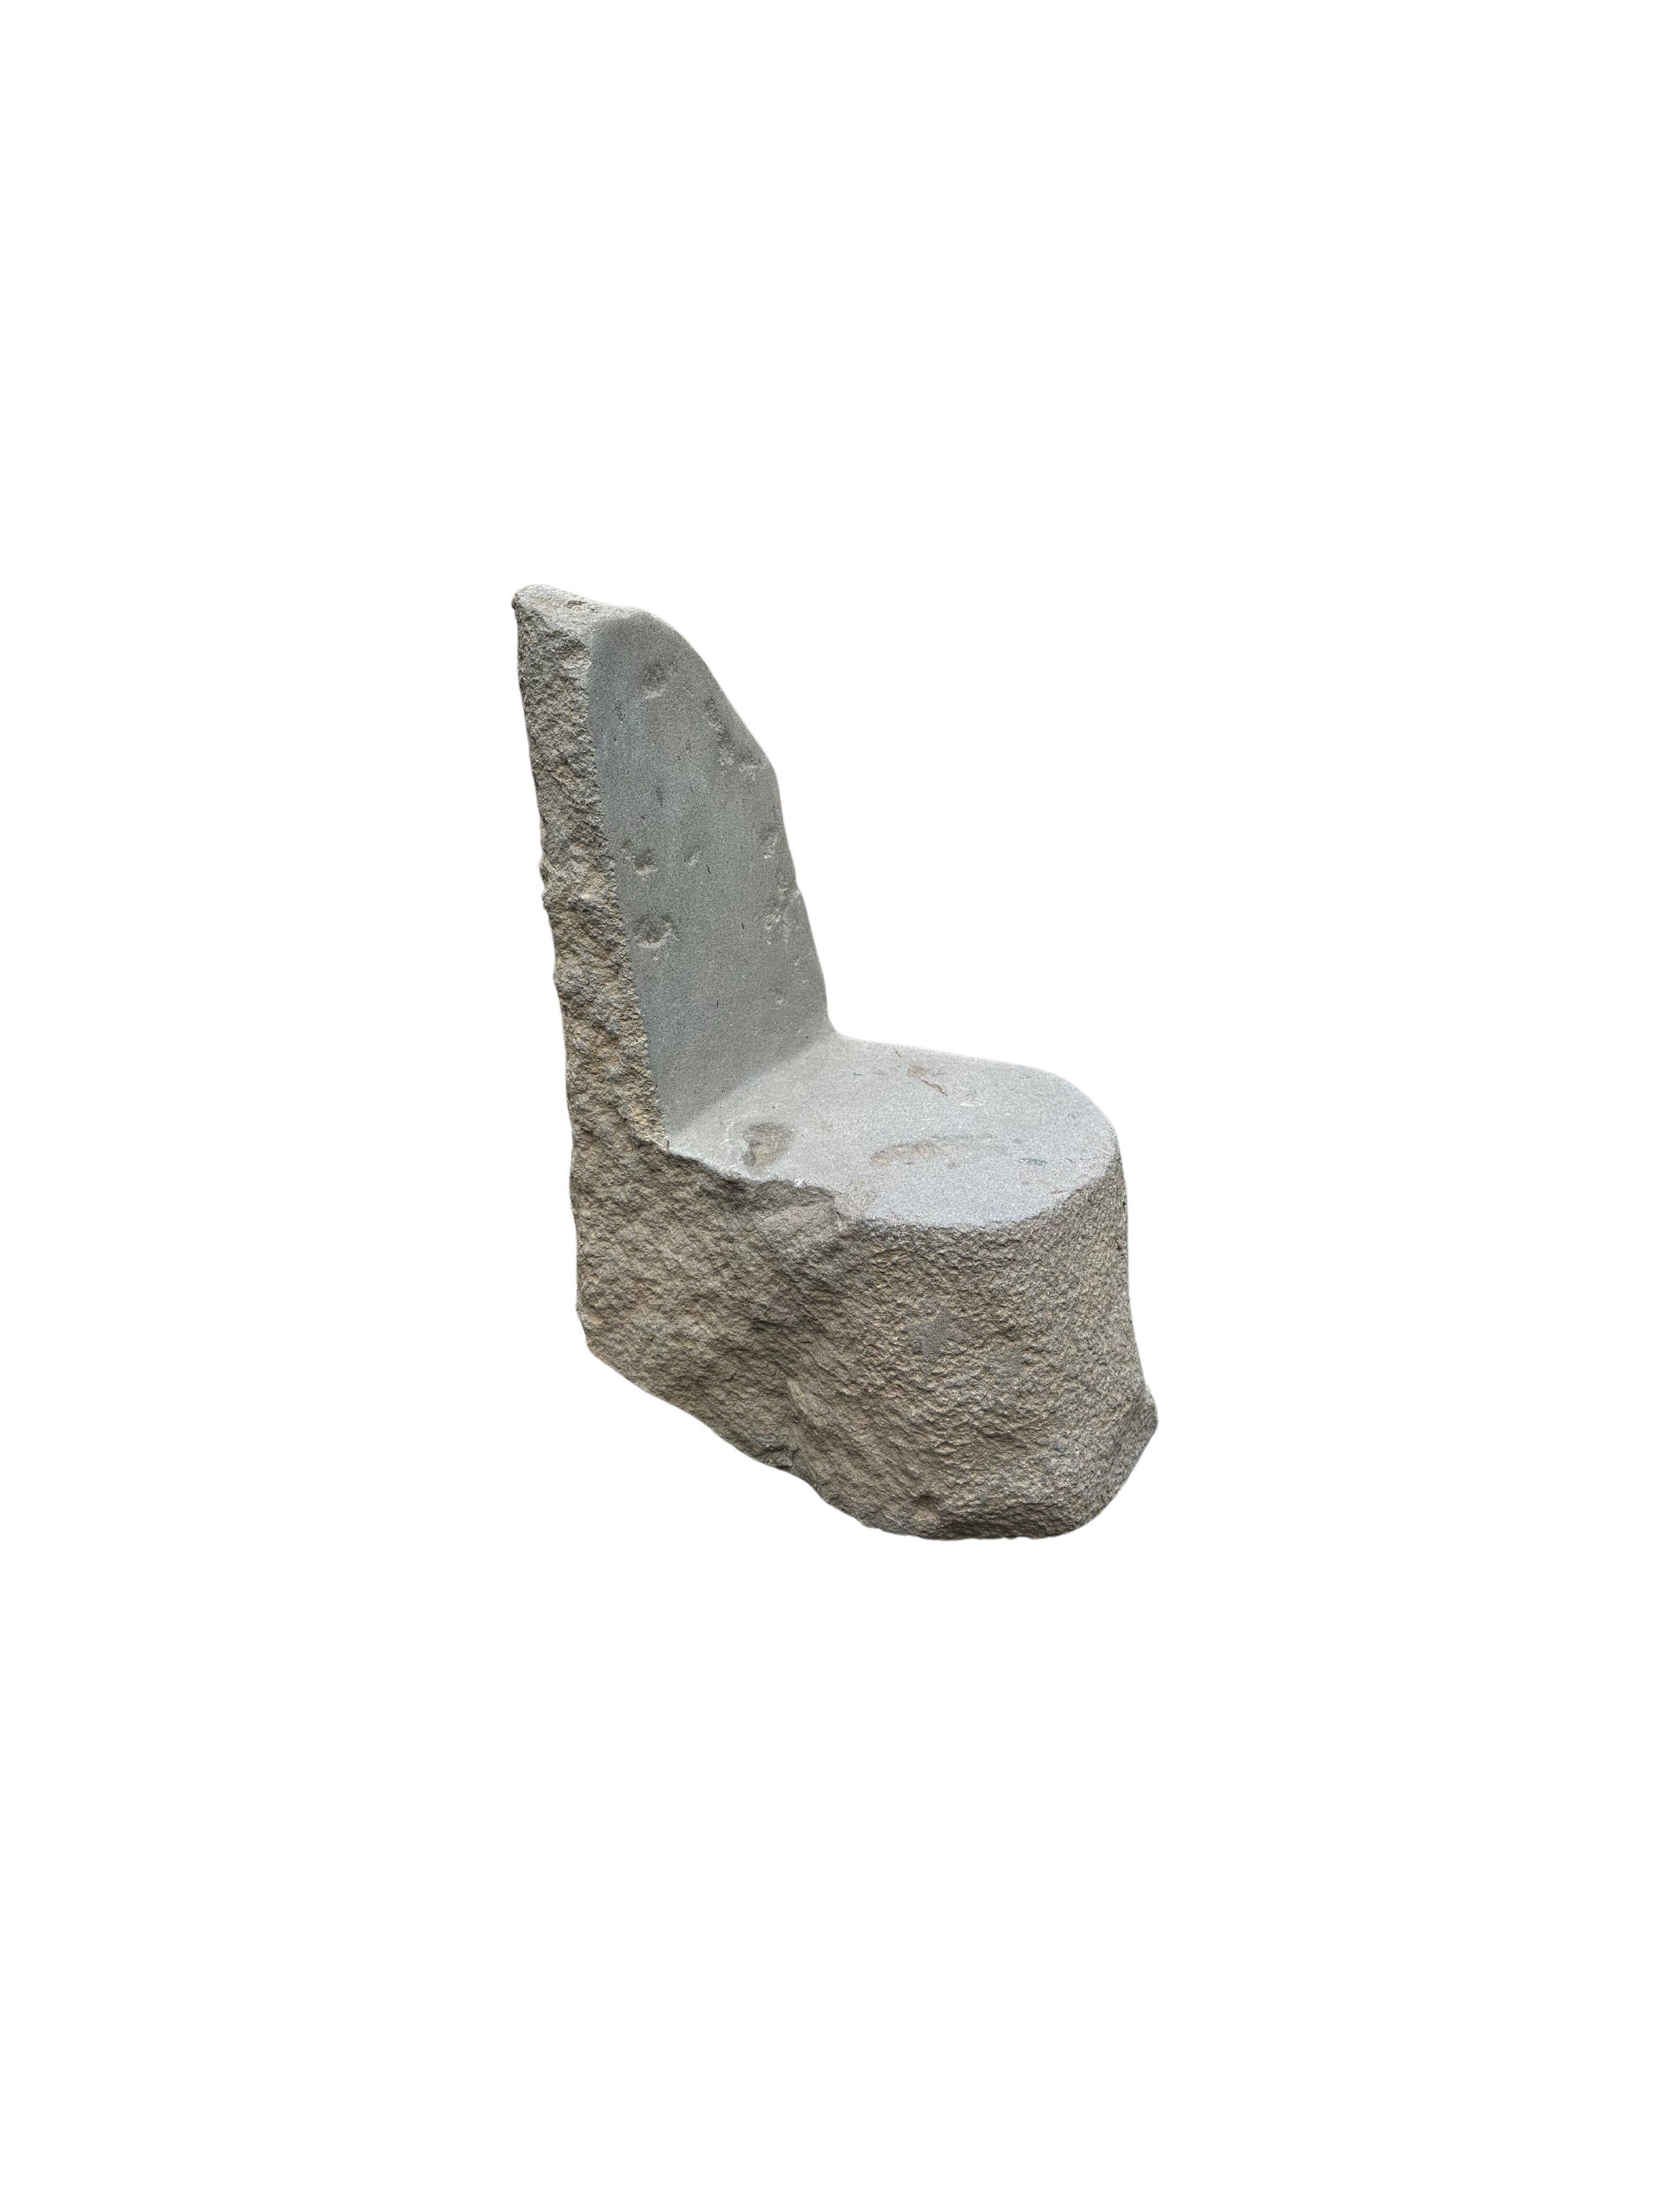 Une chaise en pierre incroyablement lourde et solide. Ce bel objet sculptural a été fabriqué à partir d'une pierre massive provenant du lit d'une rivière de l'est de Java. Un objet brut et organique avec de belles textures. Le mélange des teintes